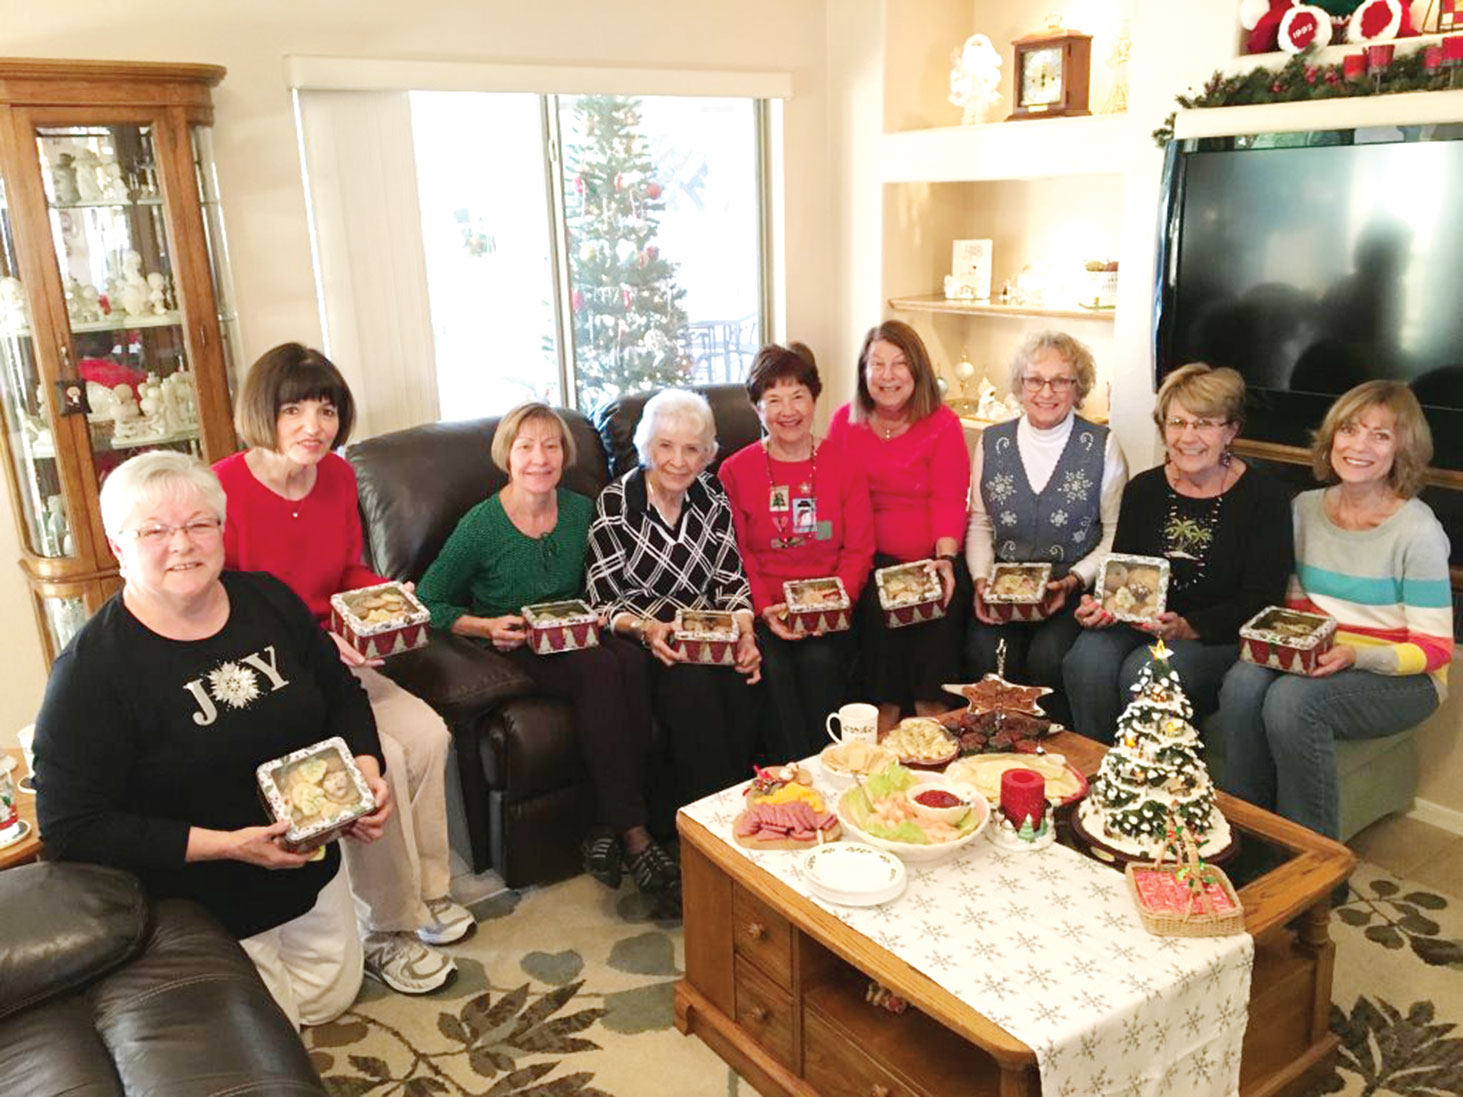 Left to right: Kearin Kasper, Sue Harrison, Marilyn Reynolds, Ellen Enright, Carolyn Suttles, Carol Sanders, Jane Hee, Kathy Hubert-Wyss, Barbara Patrow